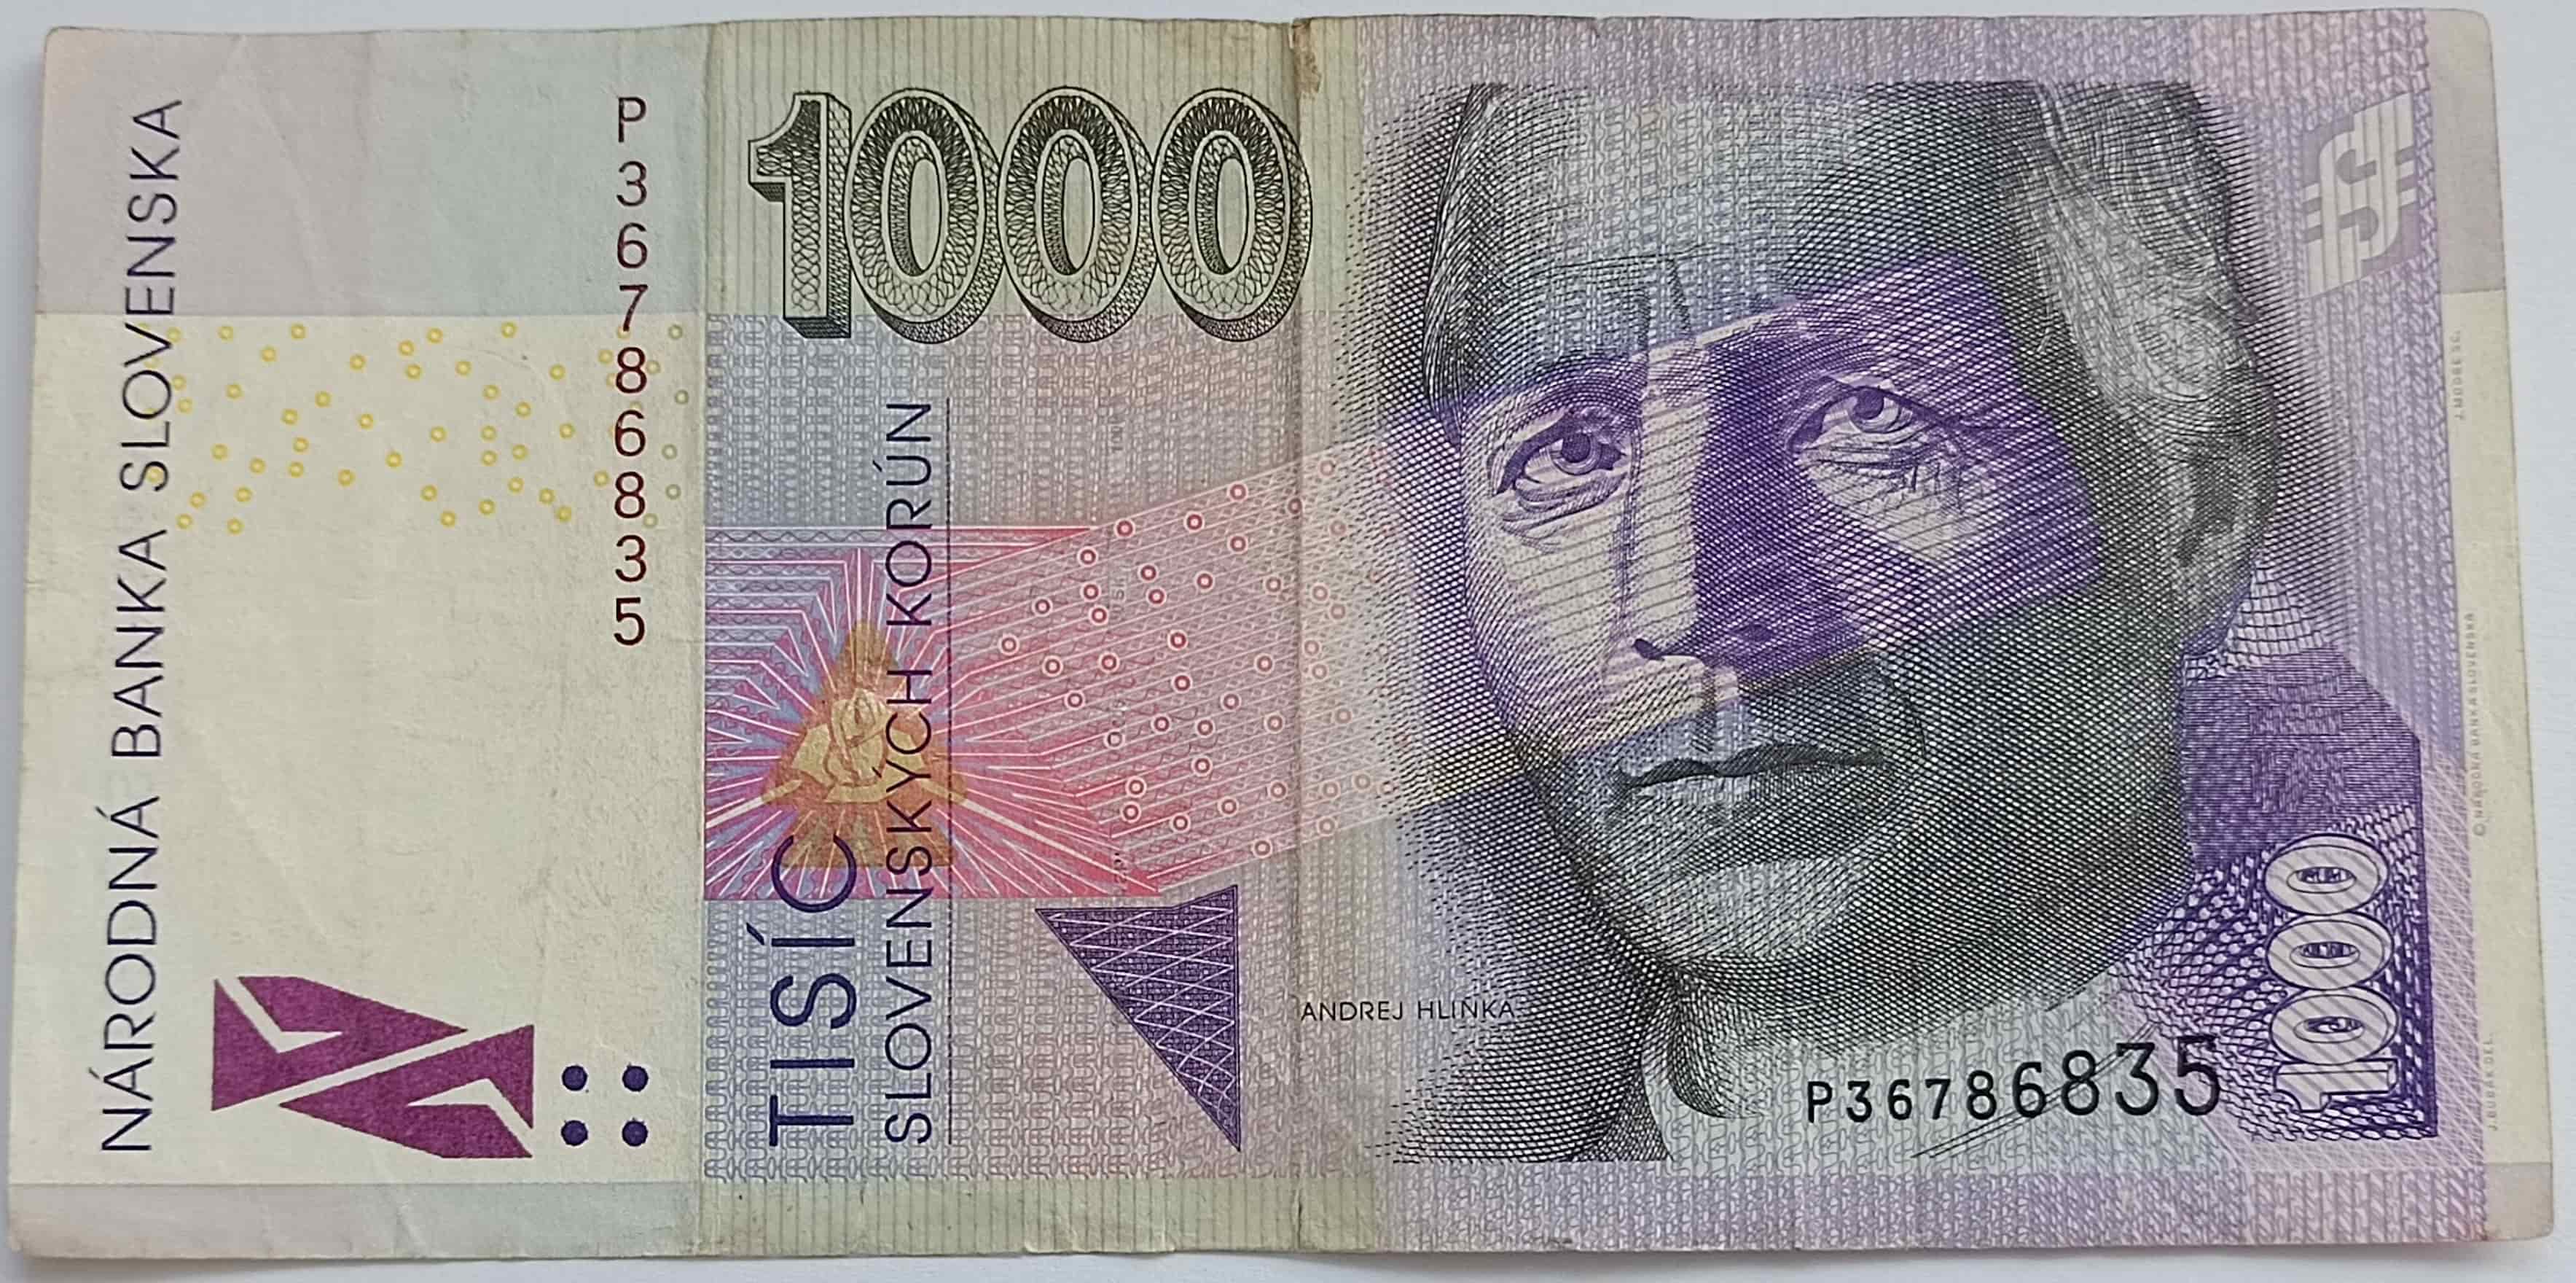 1000 SK 2002 P